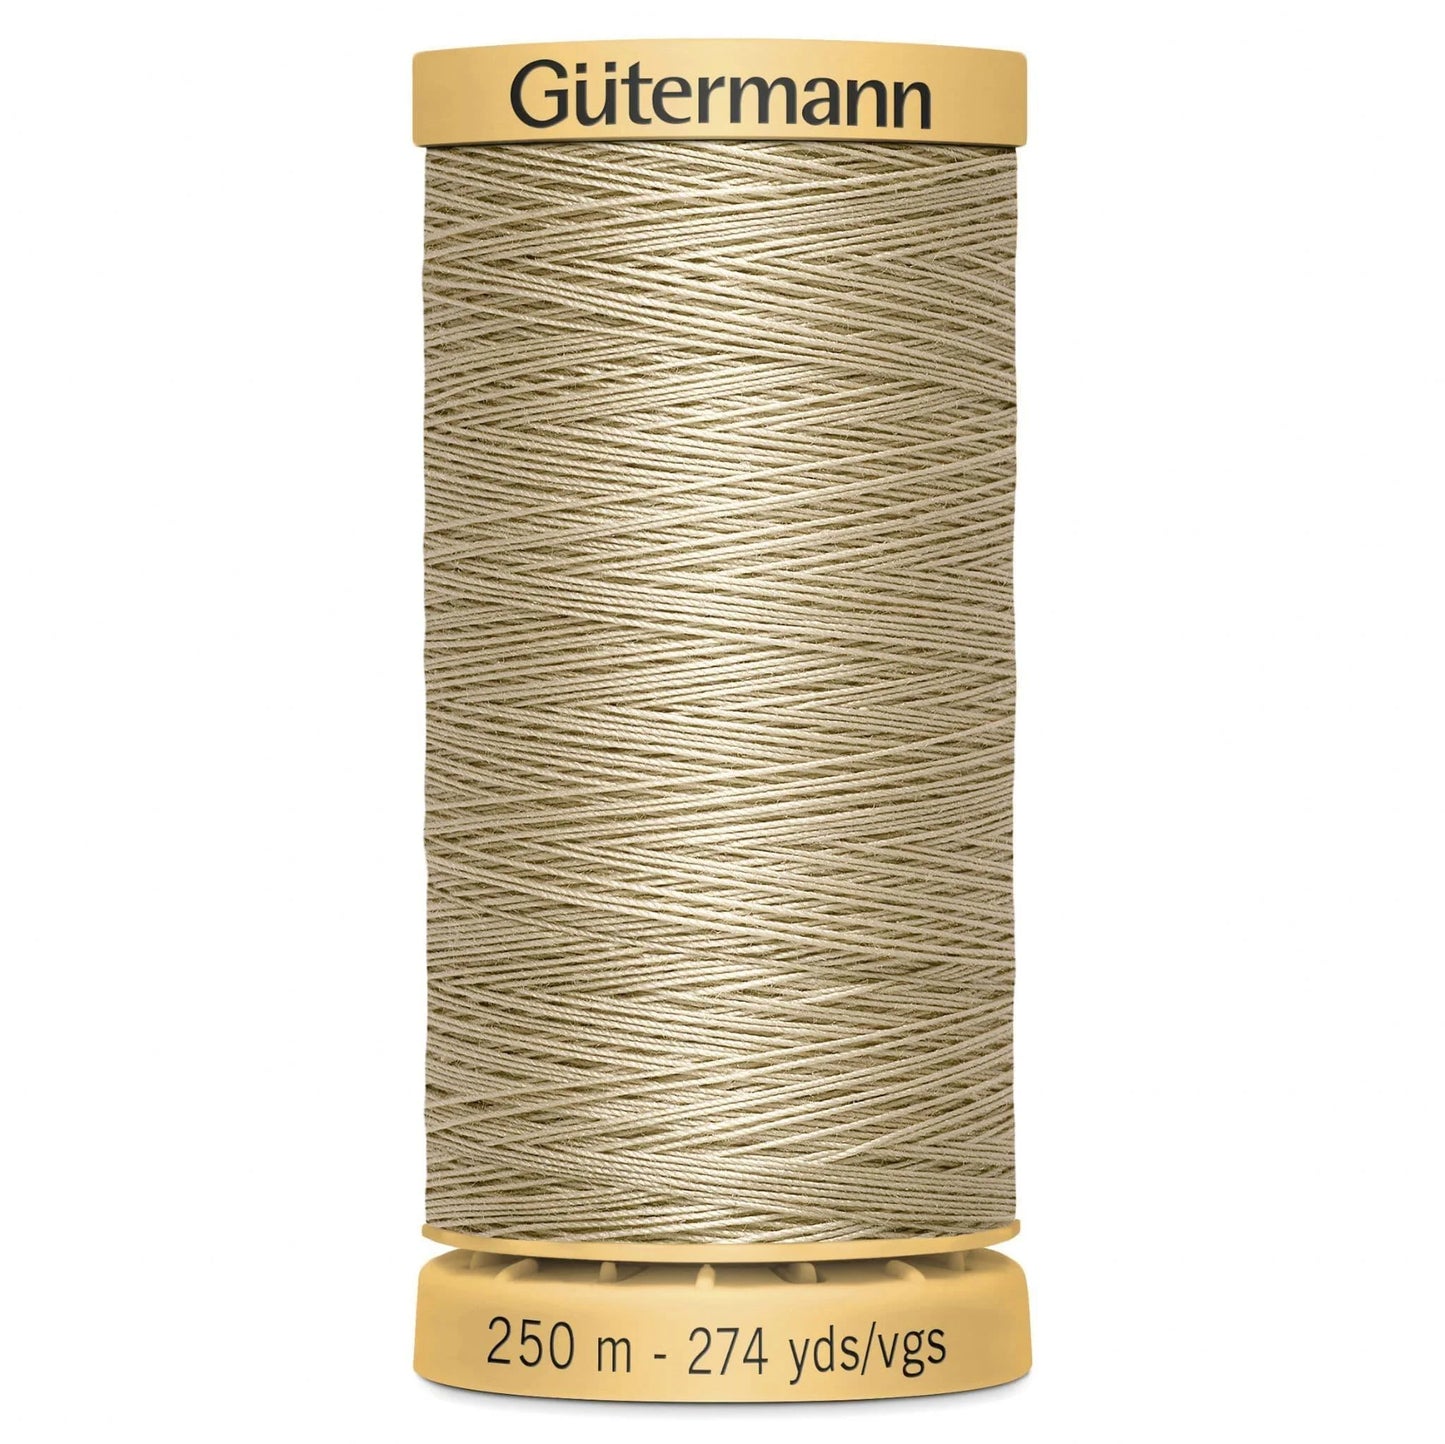 927 Gutermann Natural Cotton Thread 250m - Beige